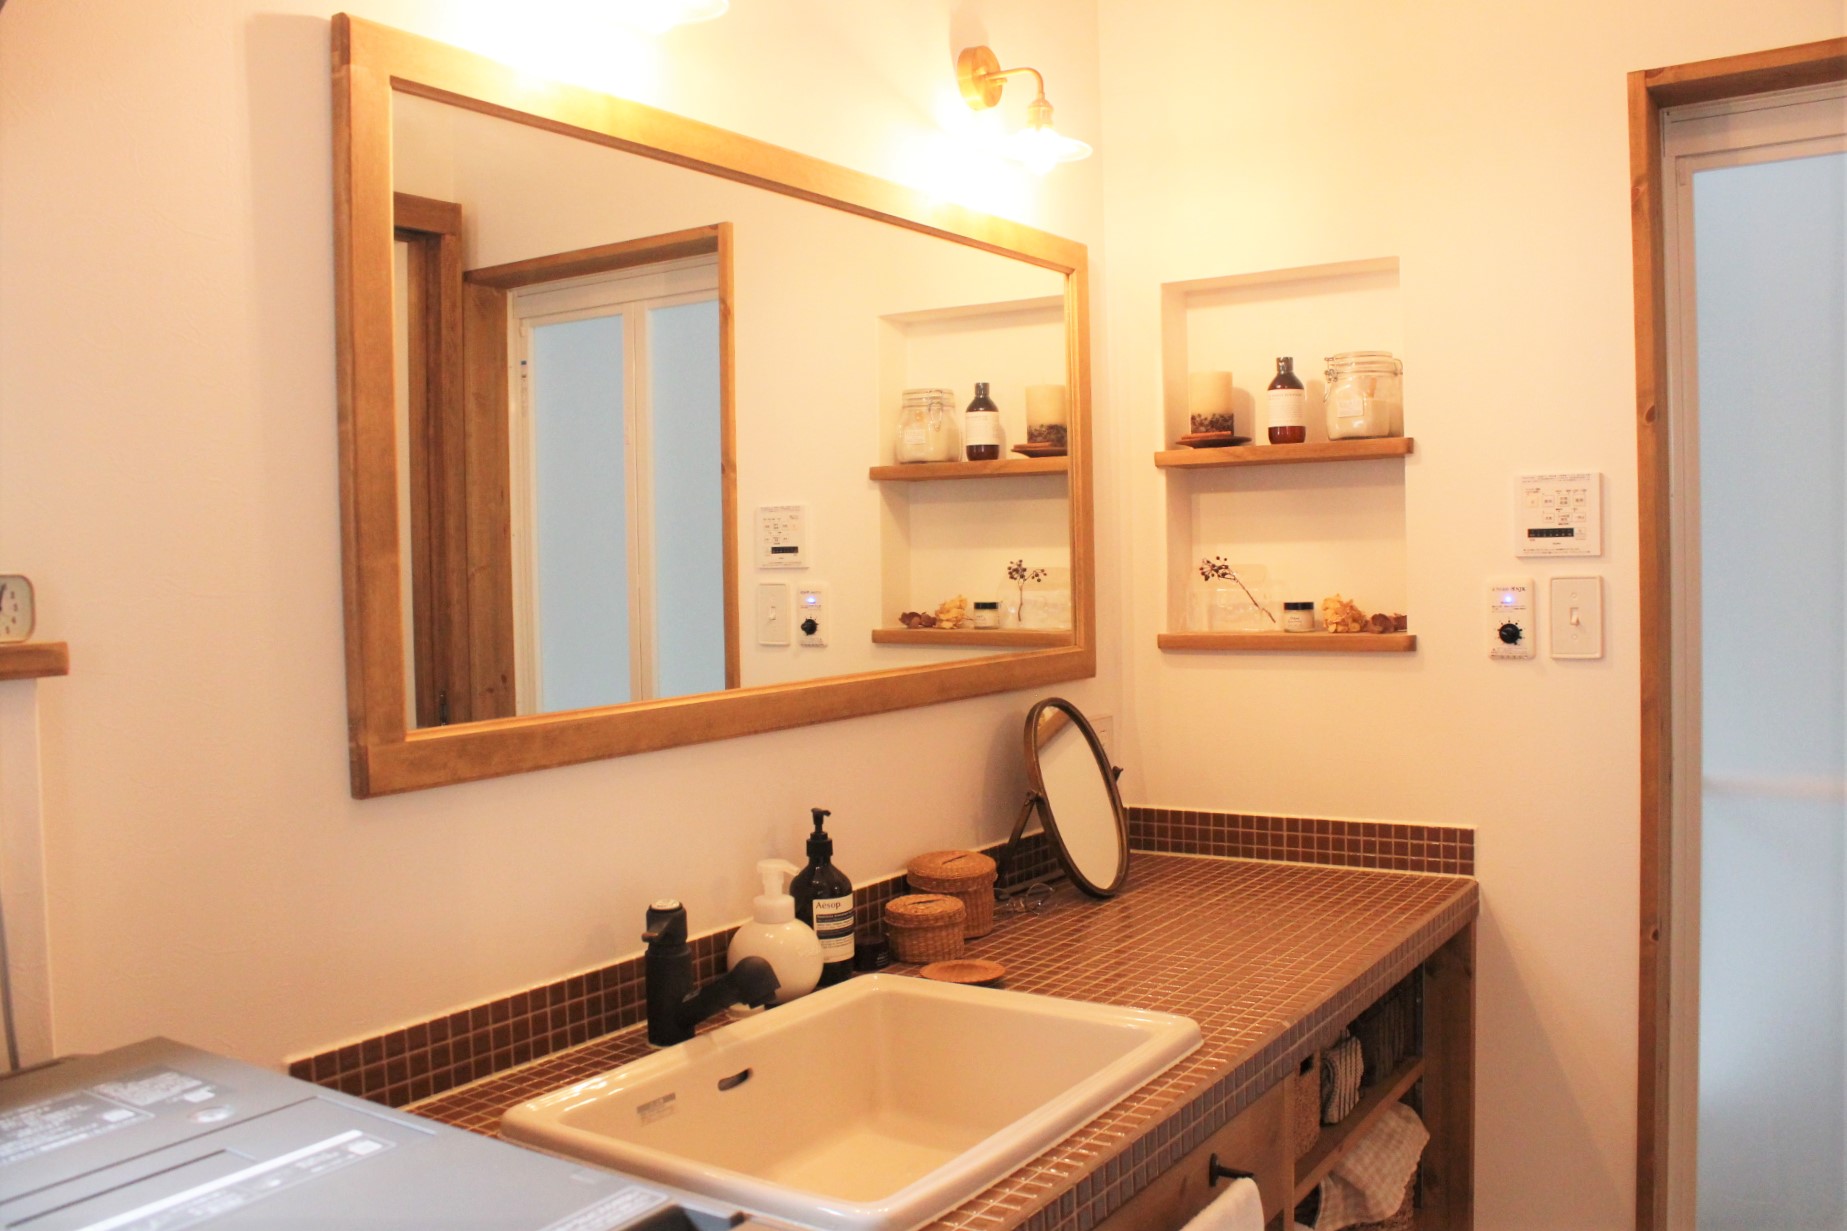 洗面化粧台と鏡は大型にして大正解。使いやすく快適.JPG